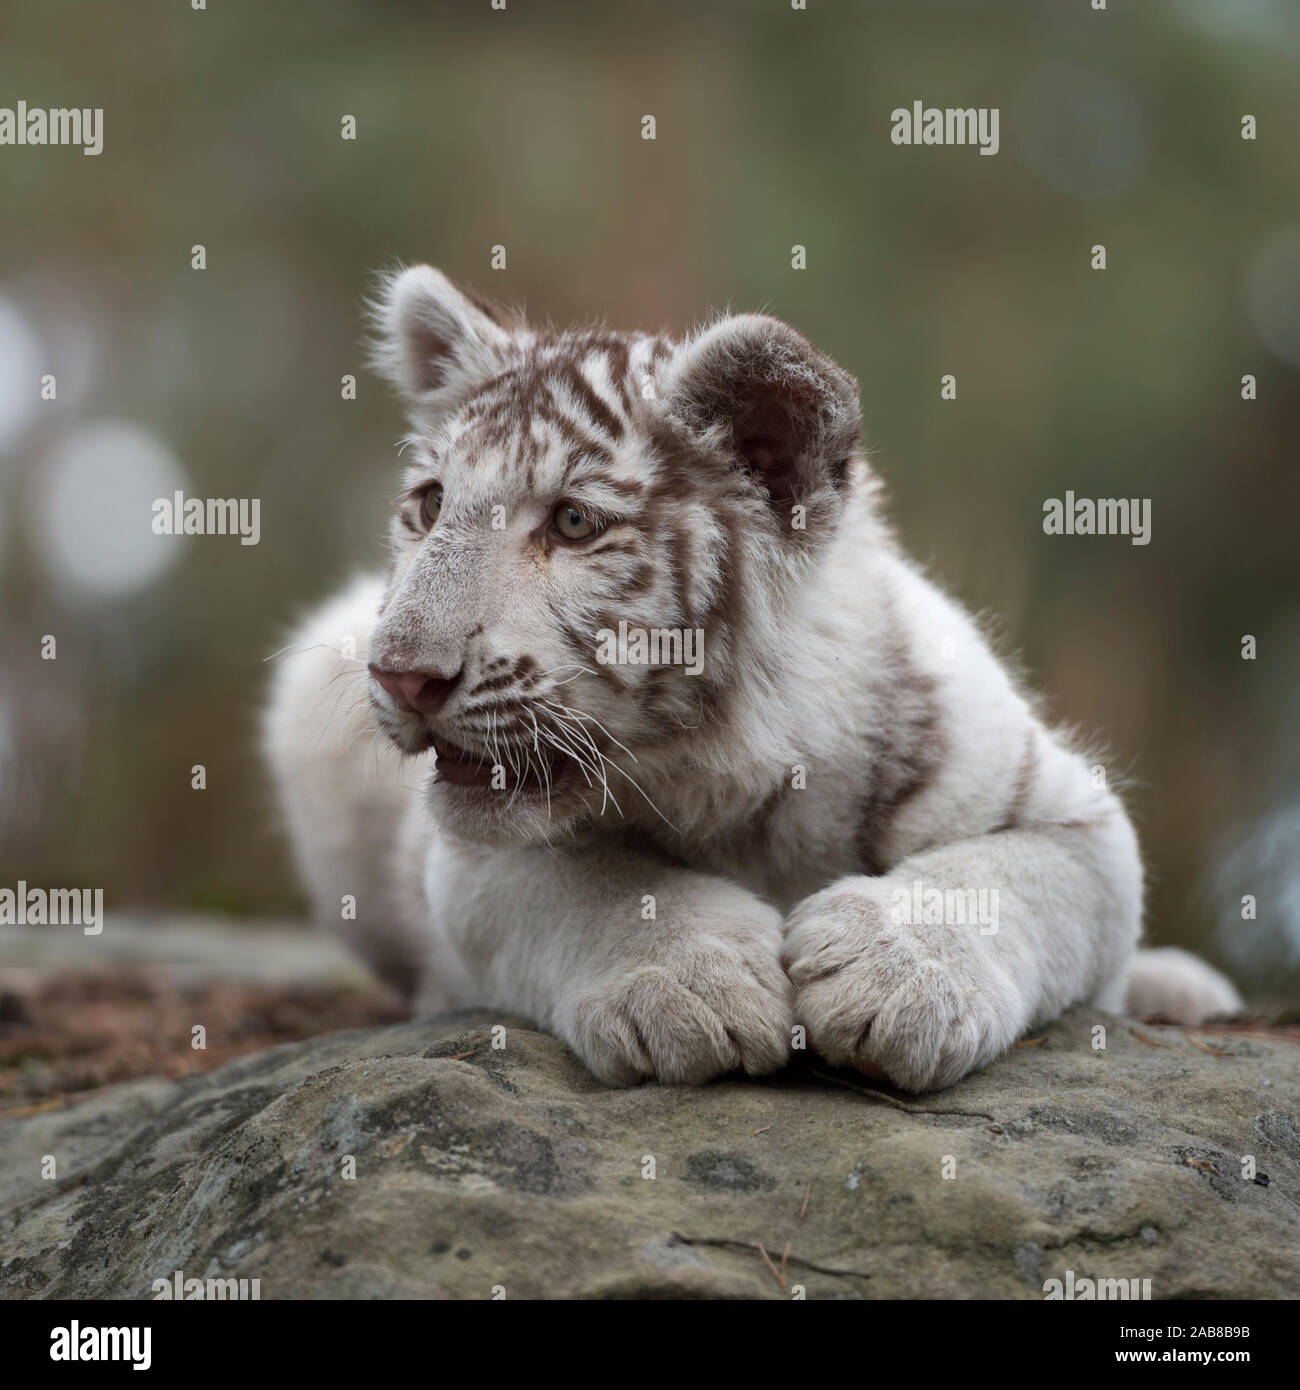 Royal Bengal Tiger/Koenigstiger (Panthera tigris), jungen Cub, weiß leucistic Morph, liegen auf Felsen, Ausruhen, schauen Sie sich um, sieht niedlich und funn Stockfoto